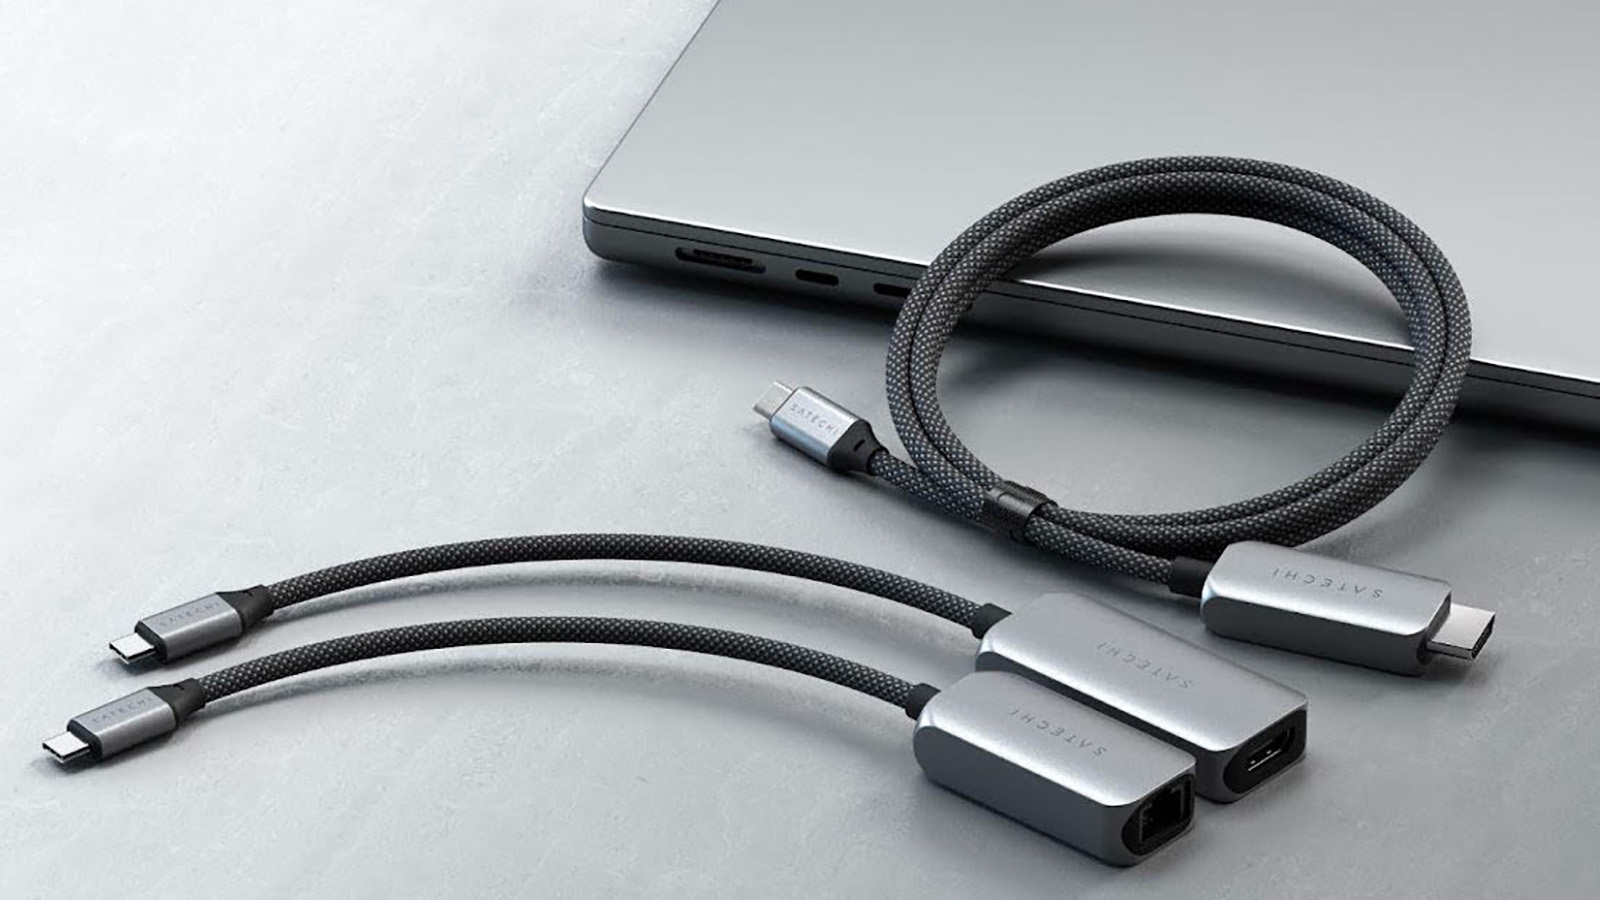 Câble Satechi USB-C - HDMI 2.1 8K : du haut de gamme pour écran 8K et débit Ethernet 2,5 Gbits